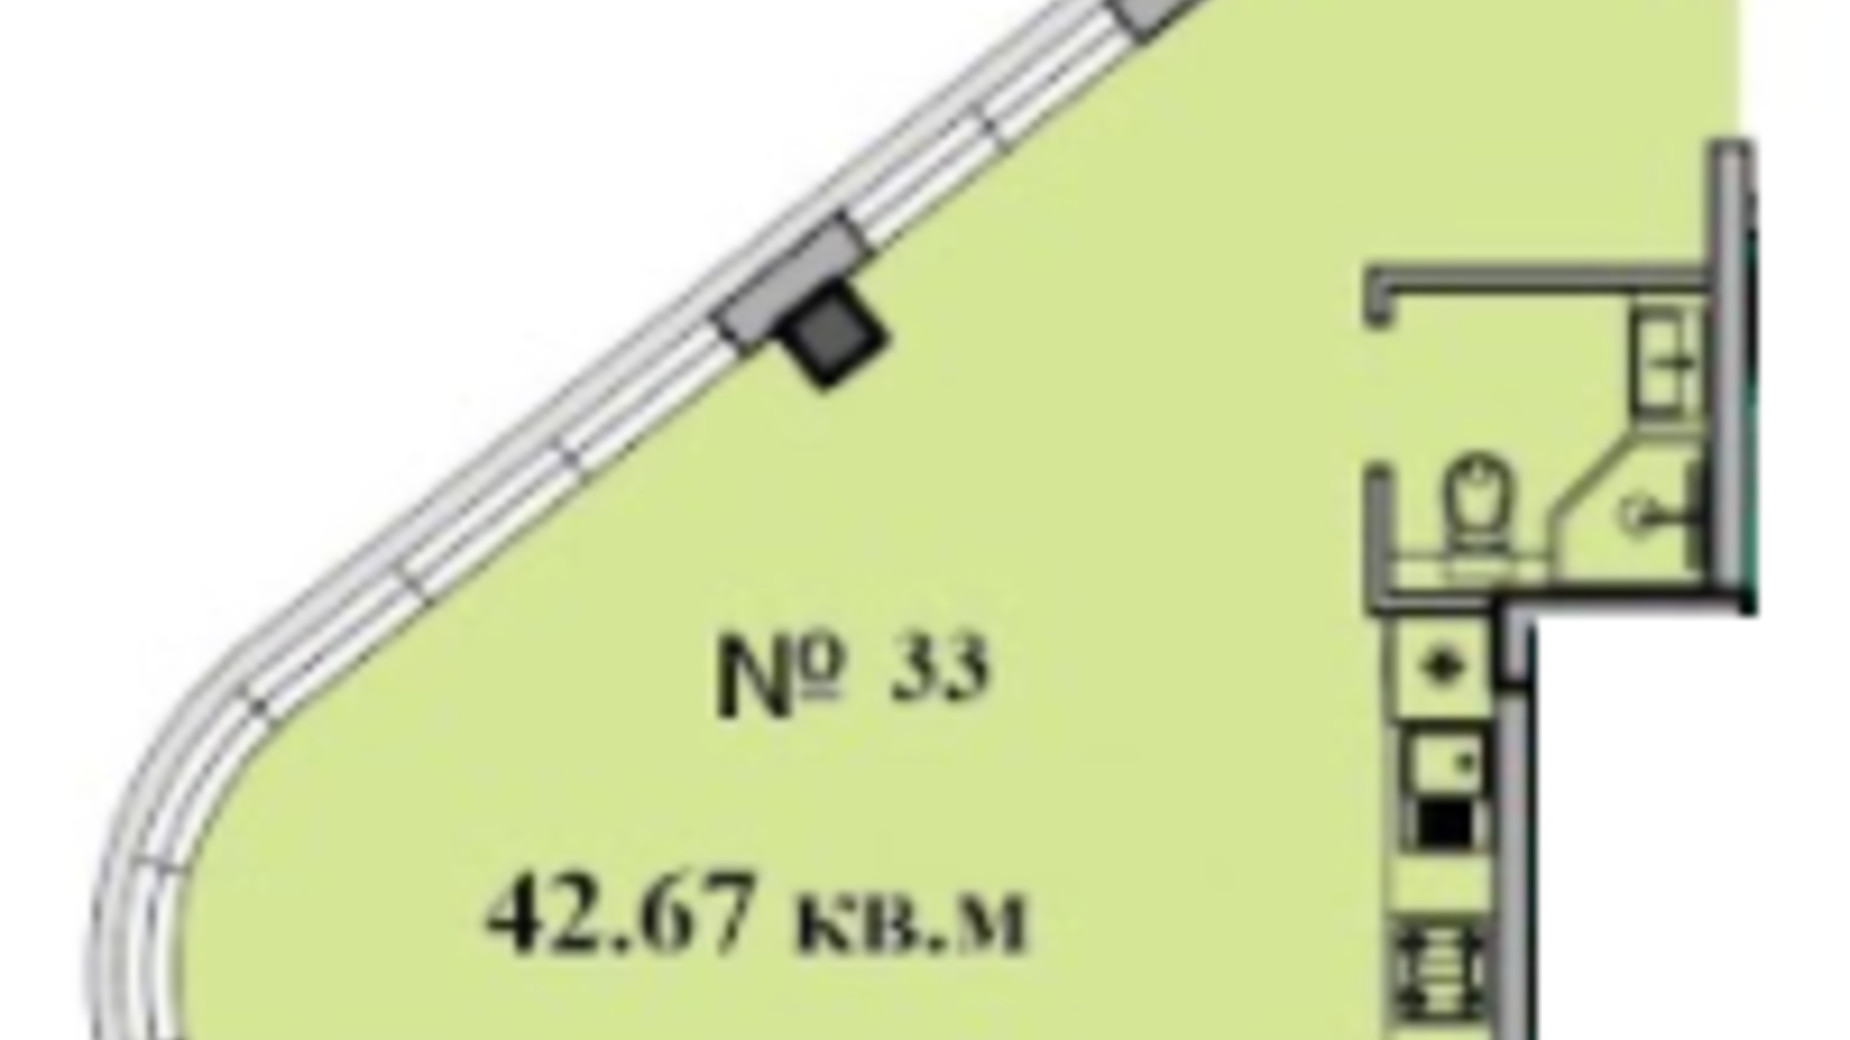 Планування 1-кімнатної квартири в ЖК CRYSTAL LUX 42.67 м², фото 313831